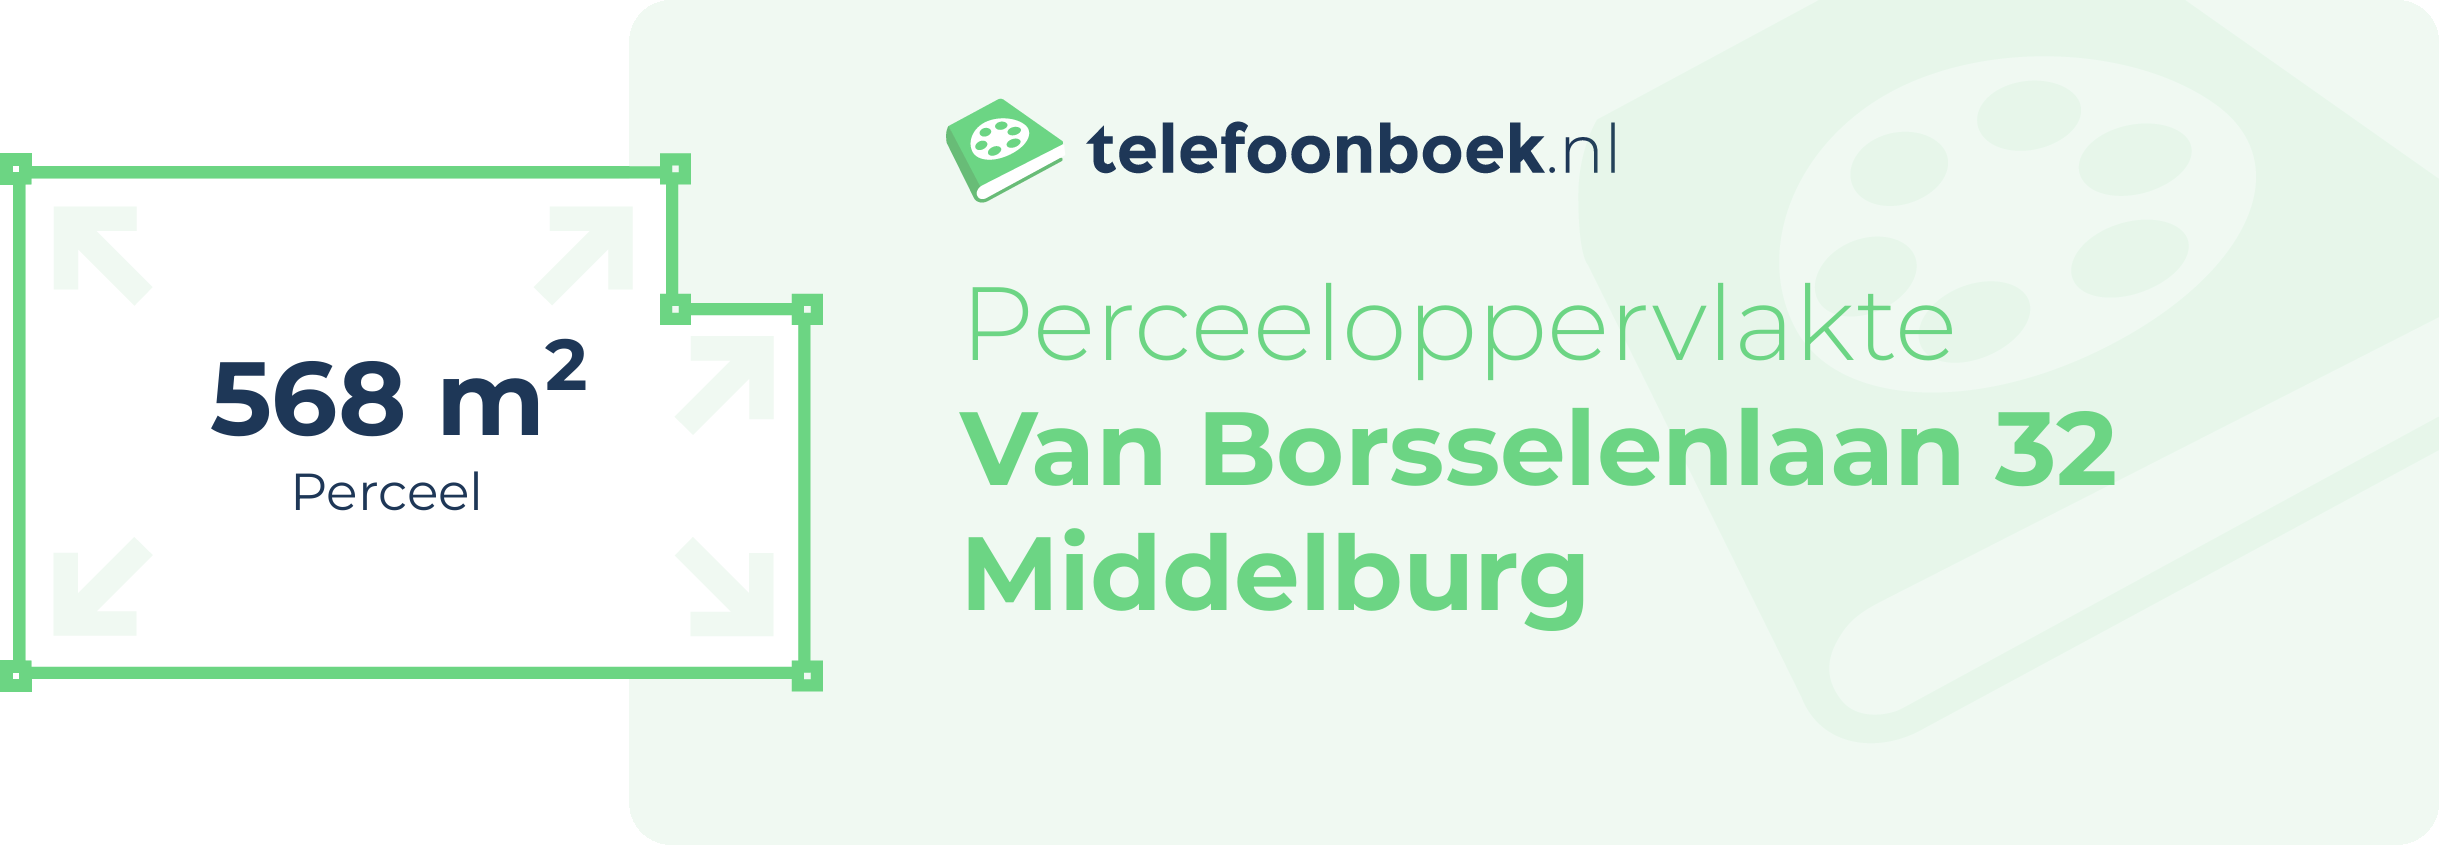 Perceeloppervlakte Van Borsselenlaan 32 Middelburg